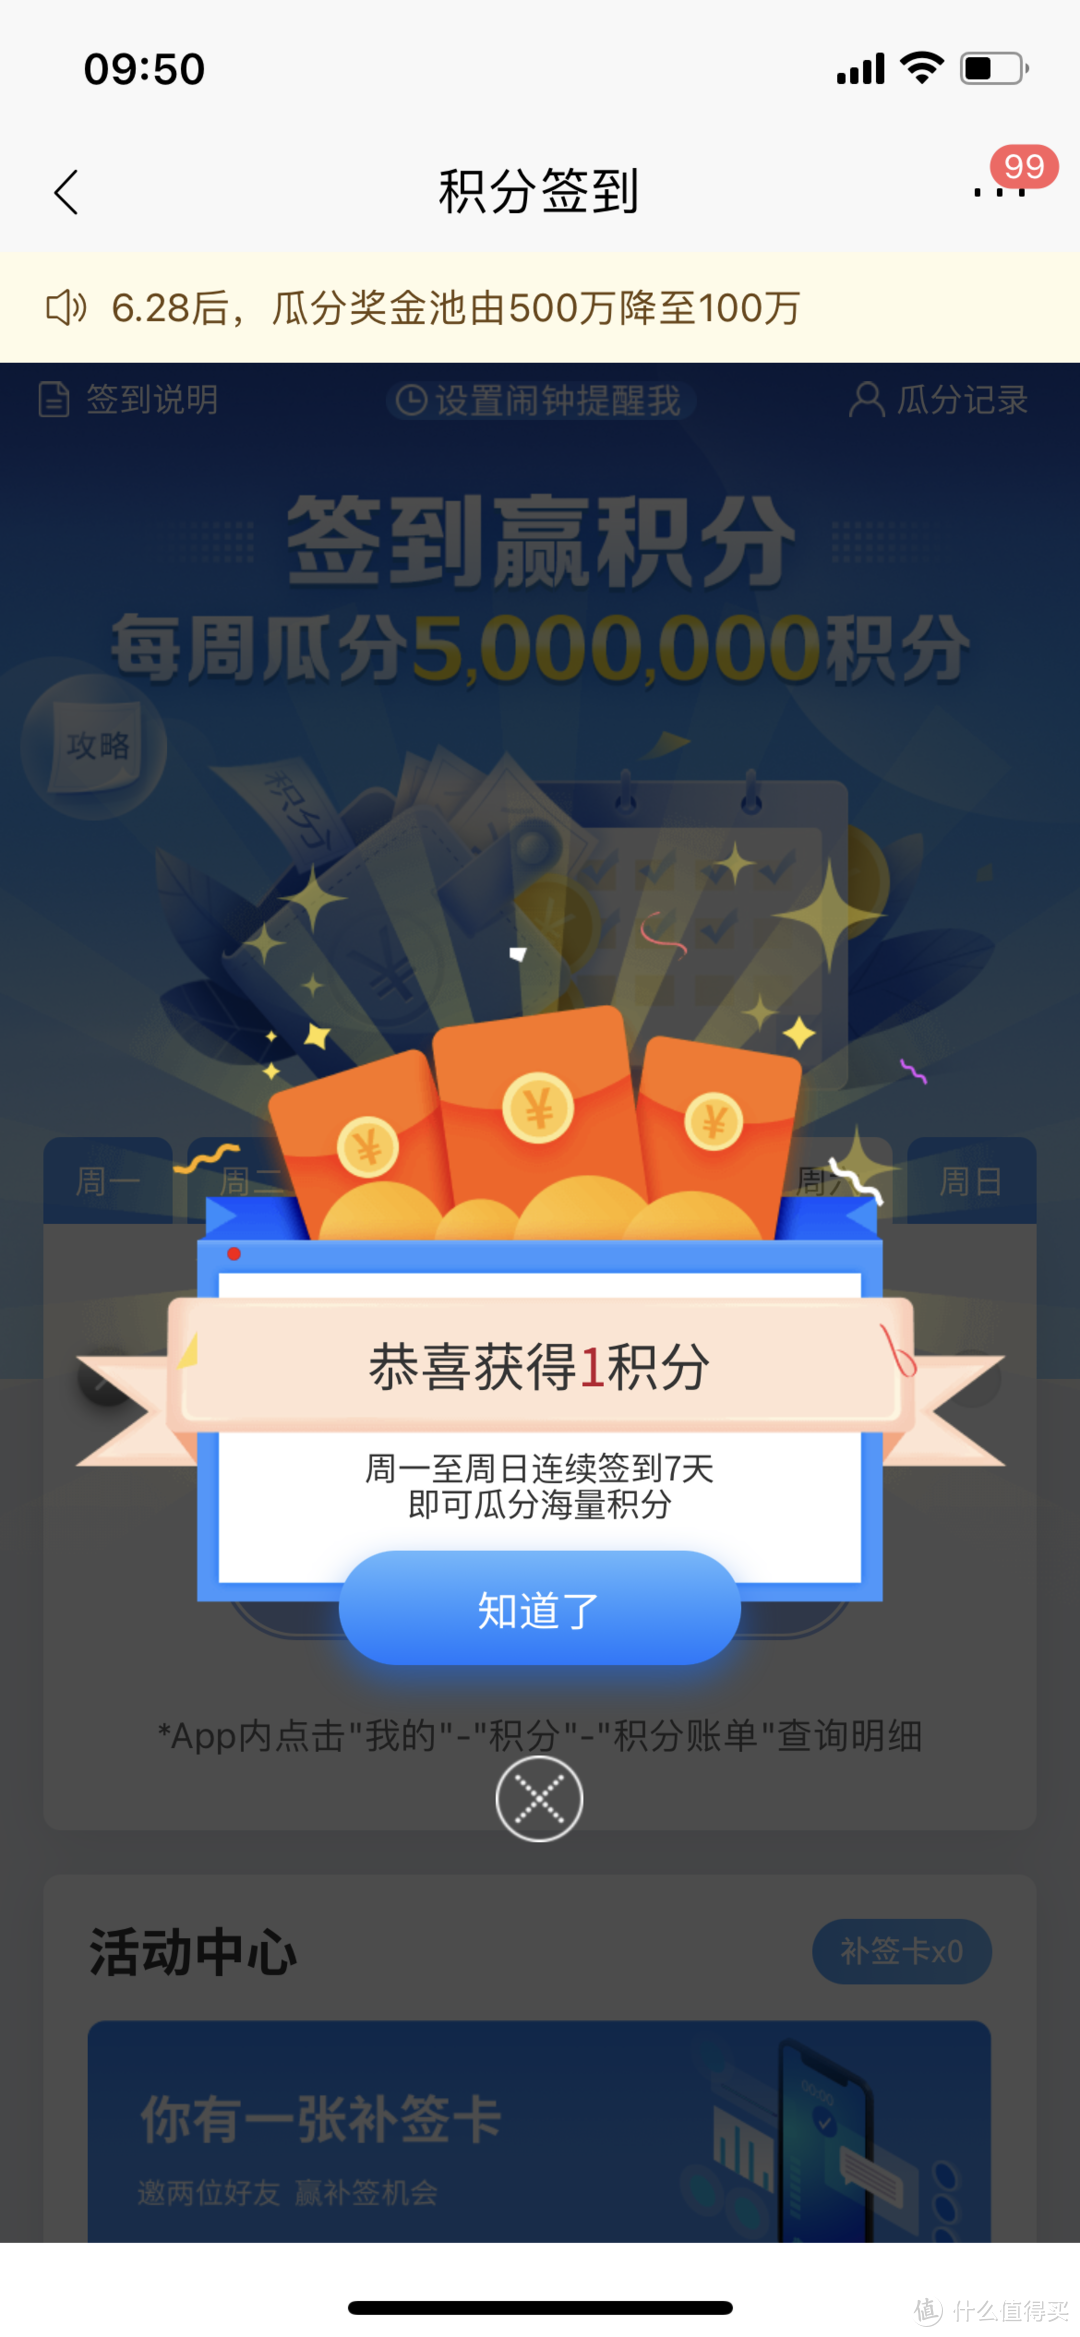 7月招商银行App 27项现金红包 +优惠大全【高能福利预告】